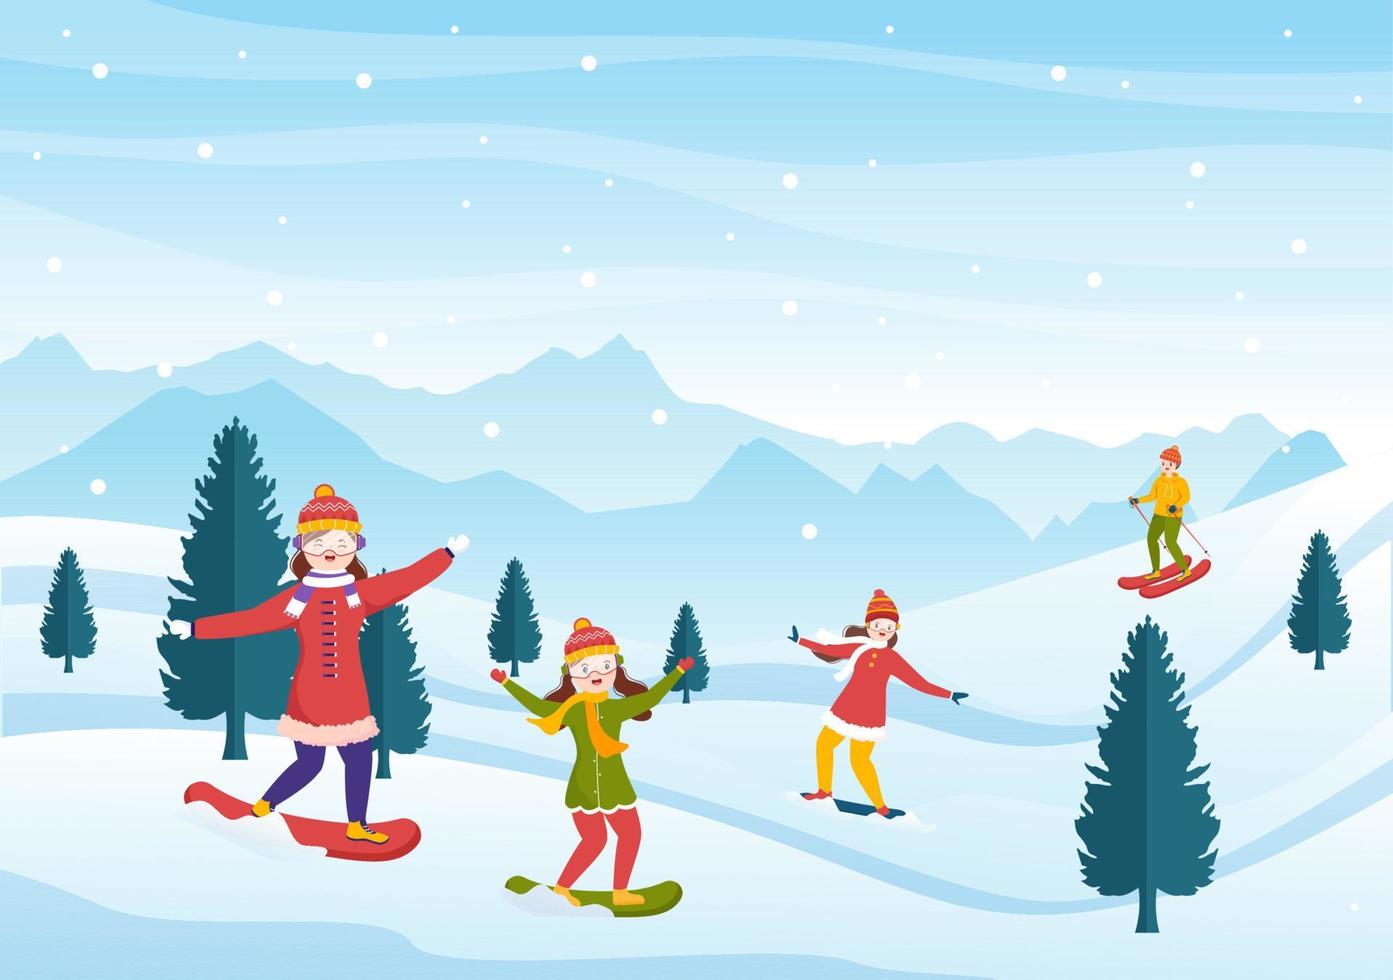 snowboarden handgetekende cartoon vlakke afbeelding van mensen in winteroutfit glijden en springen met snowboards op besneeuwde berghellingen of hellingen vector